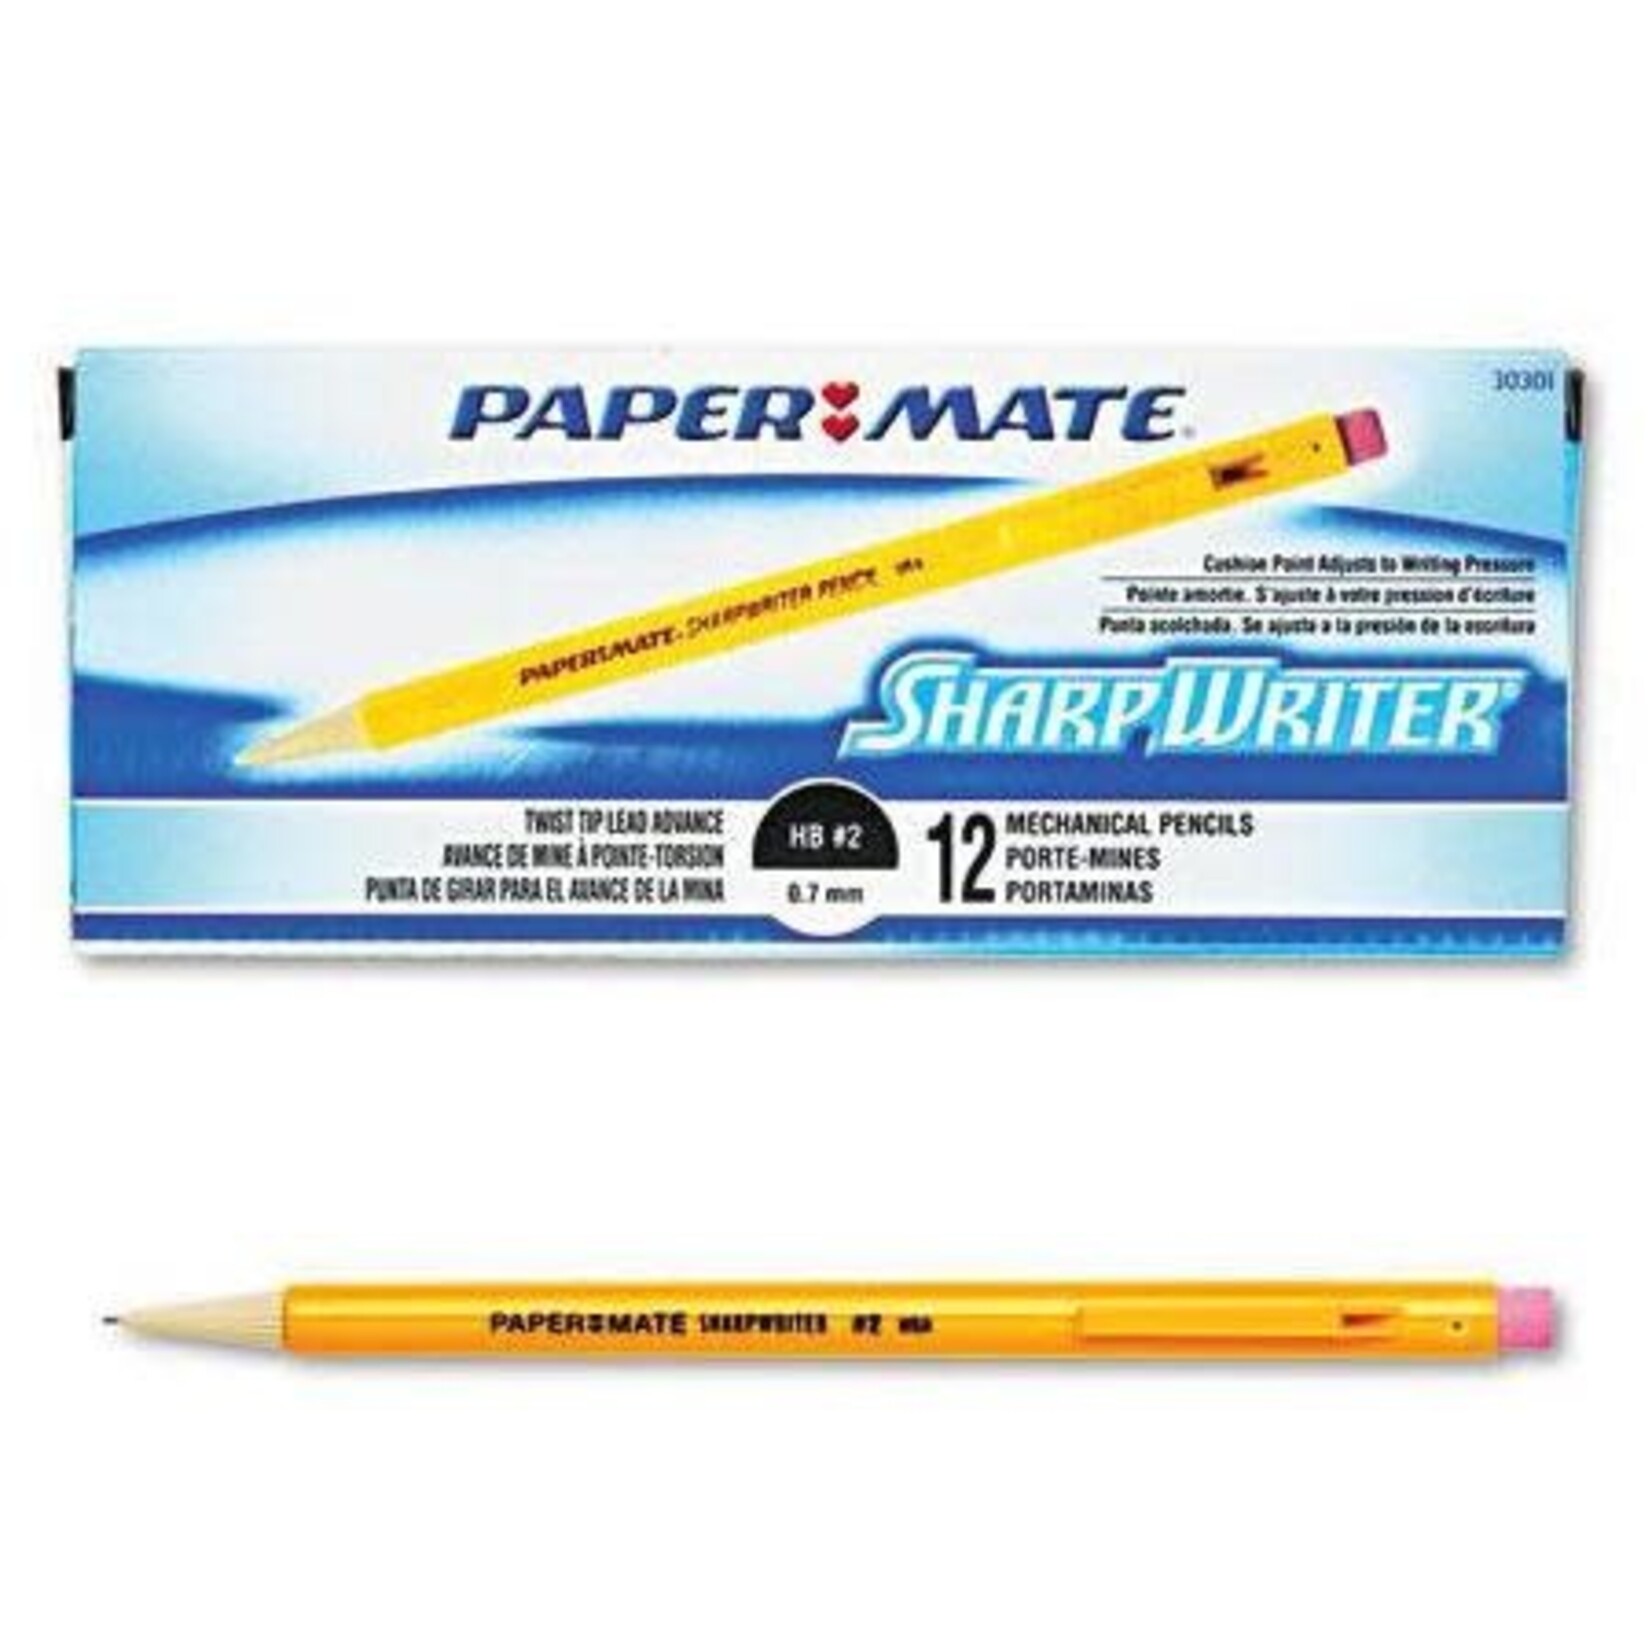 Paper Mate Paper Mate Sharpwriter Mechanical Pencil